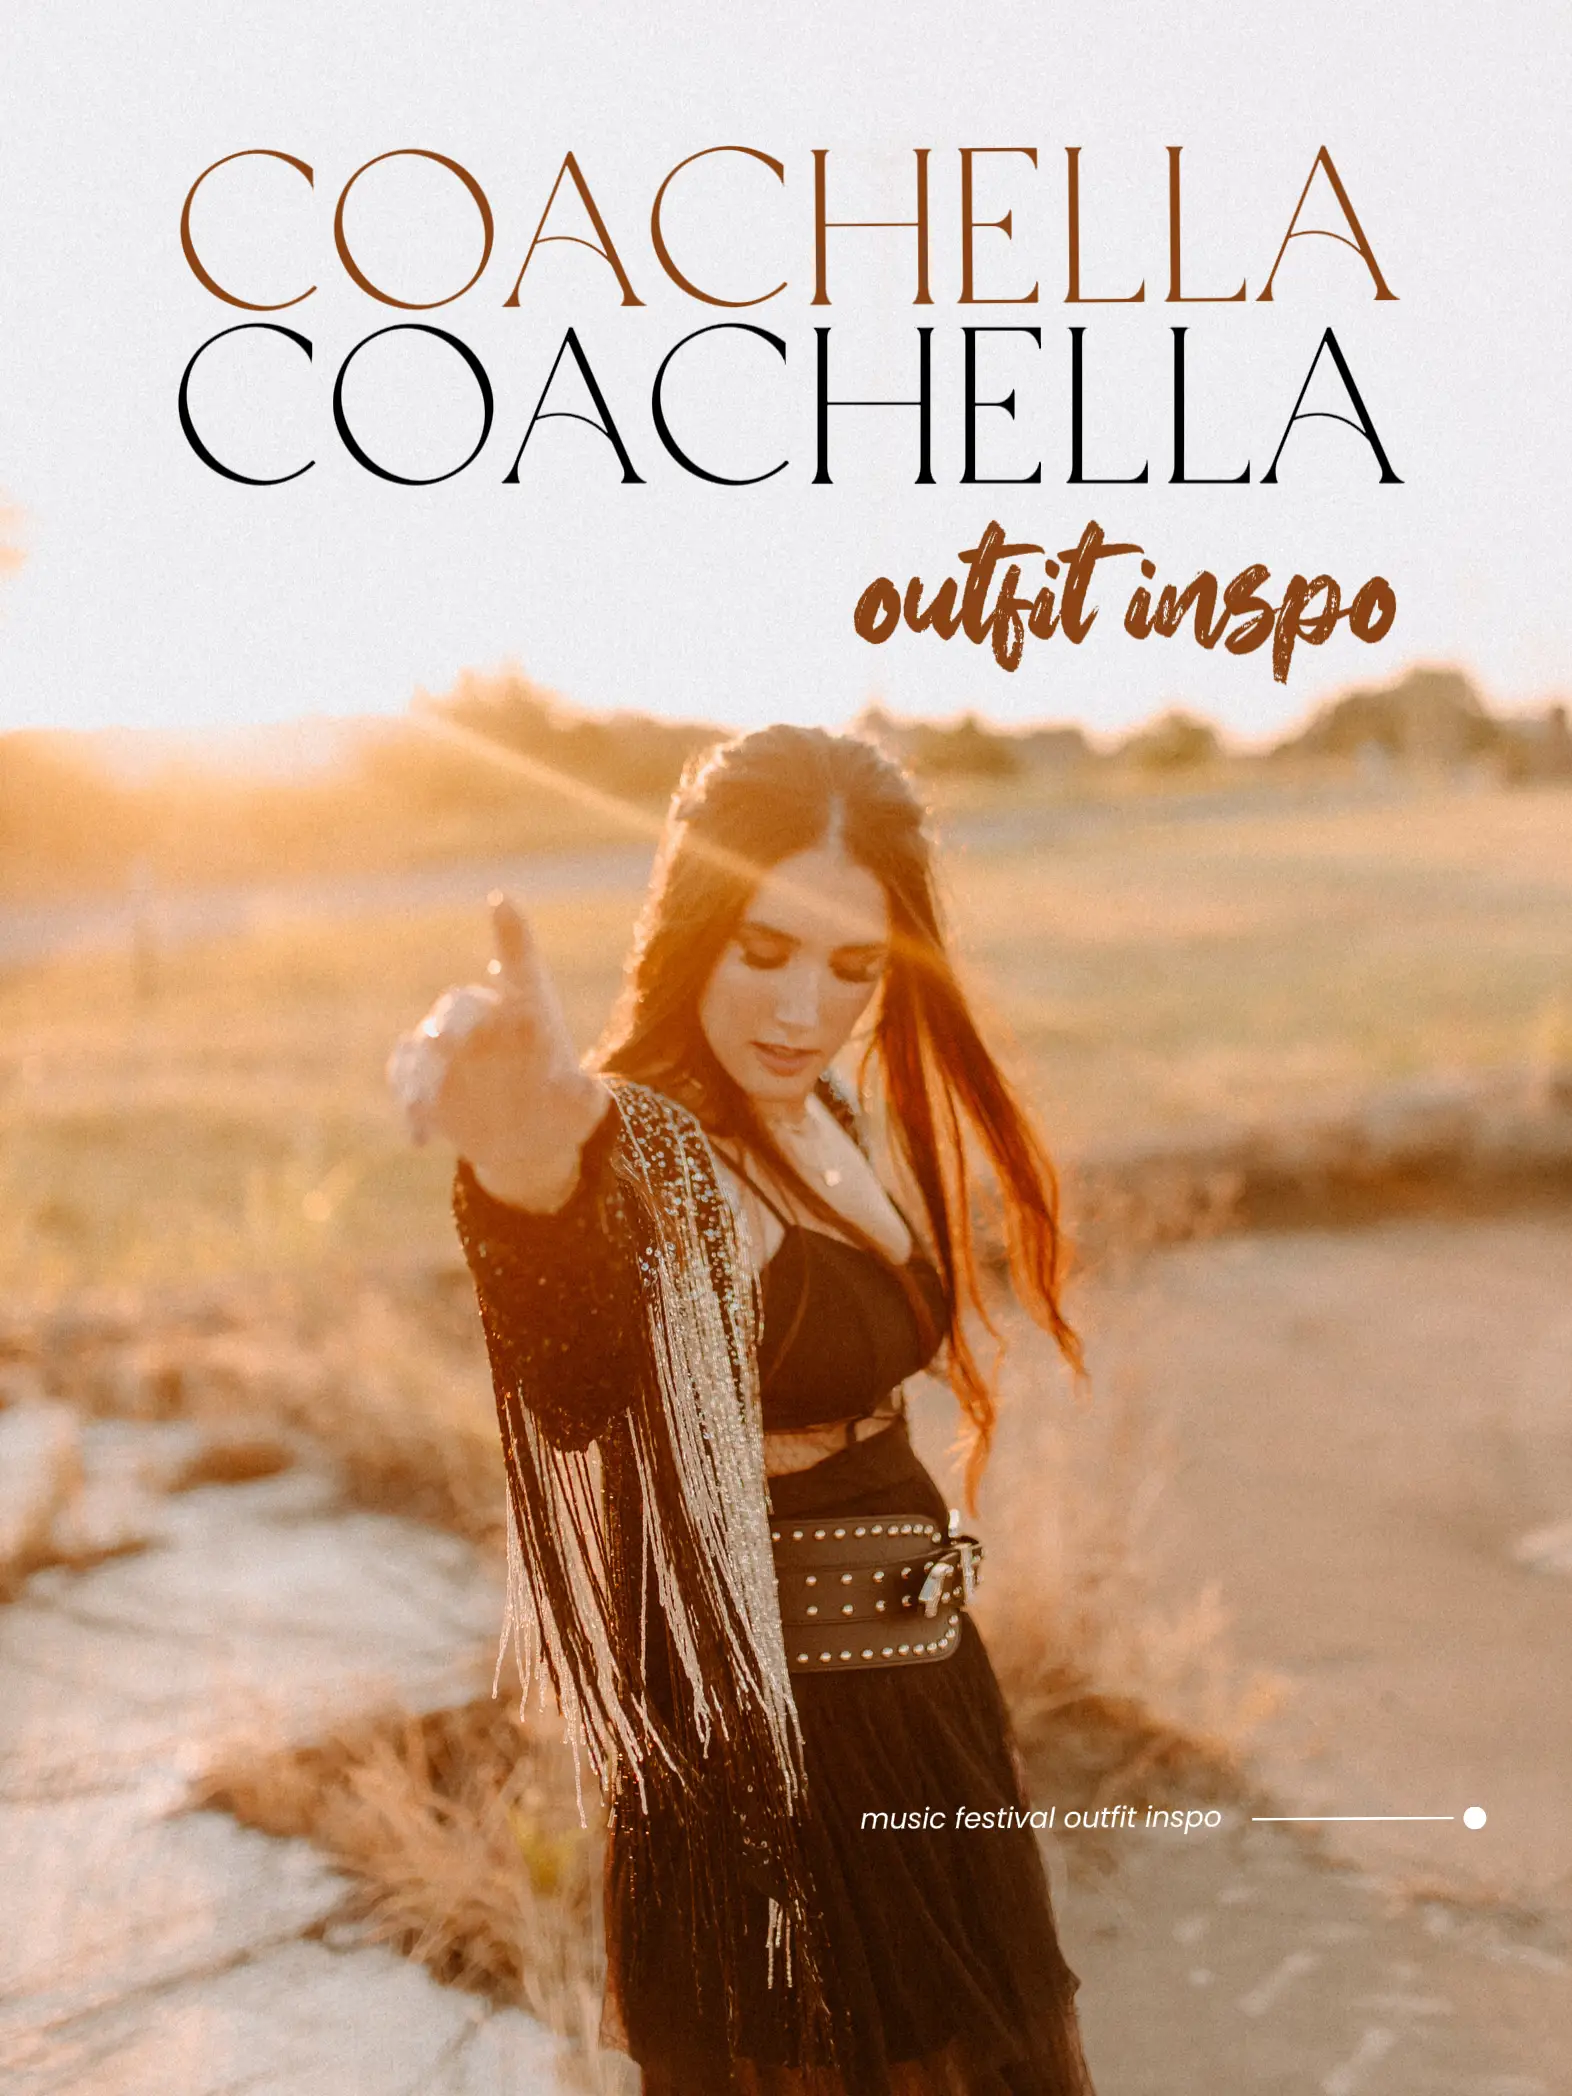 Coachella outfit inspo 🔥's images